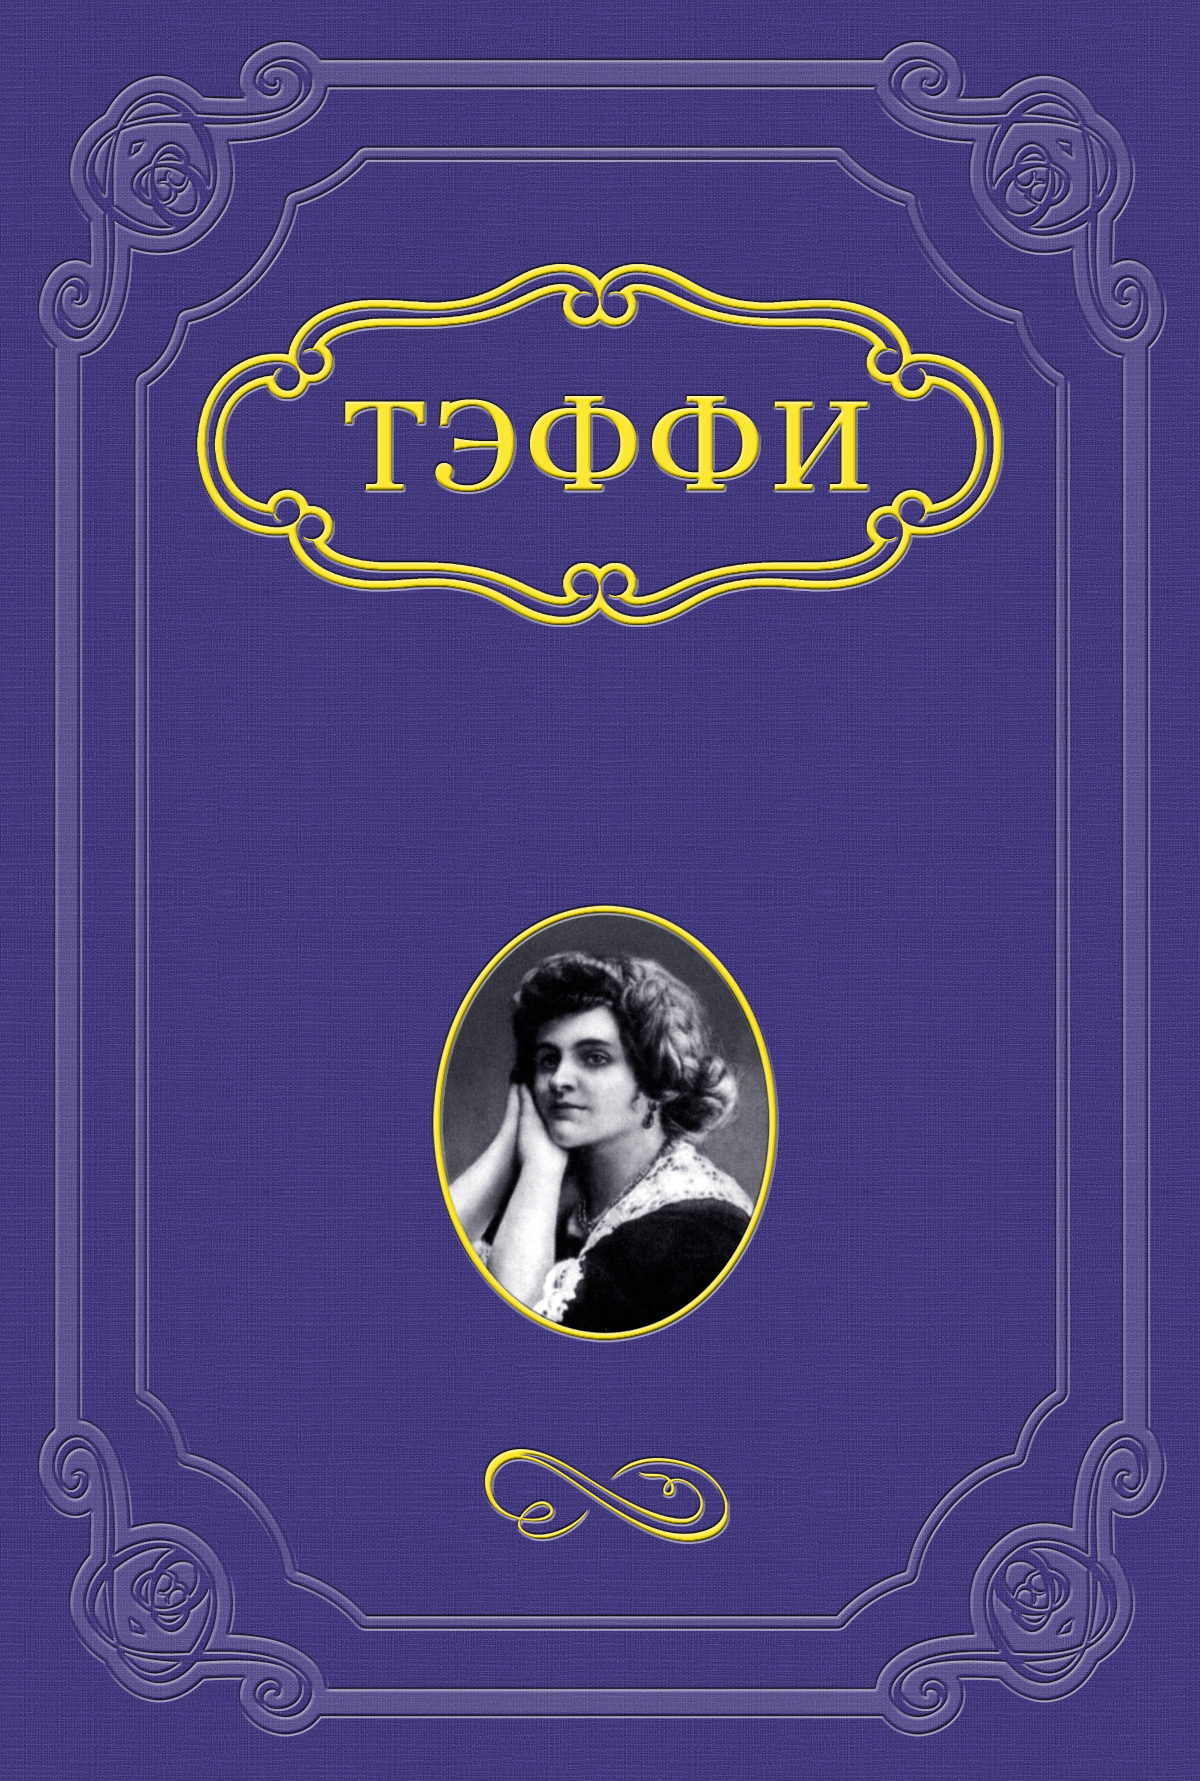 Книга Сорока из серии , созданная Надежда Тэффи, может относится к жанру Русская классика, Рассказы. Стоимость электронной книги Сорока с идентификатором 662075 составляет 5.99 руб.